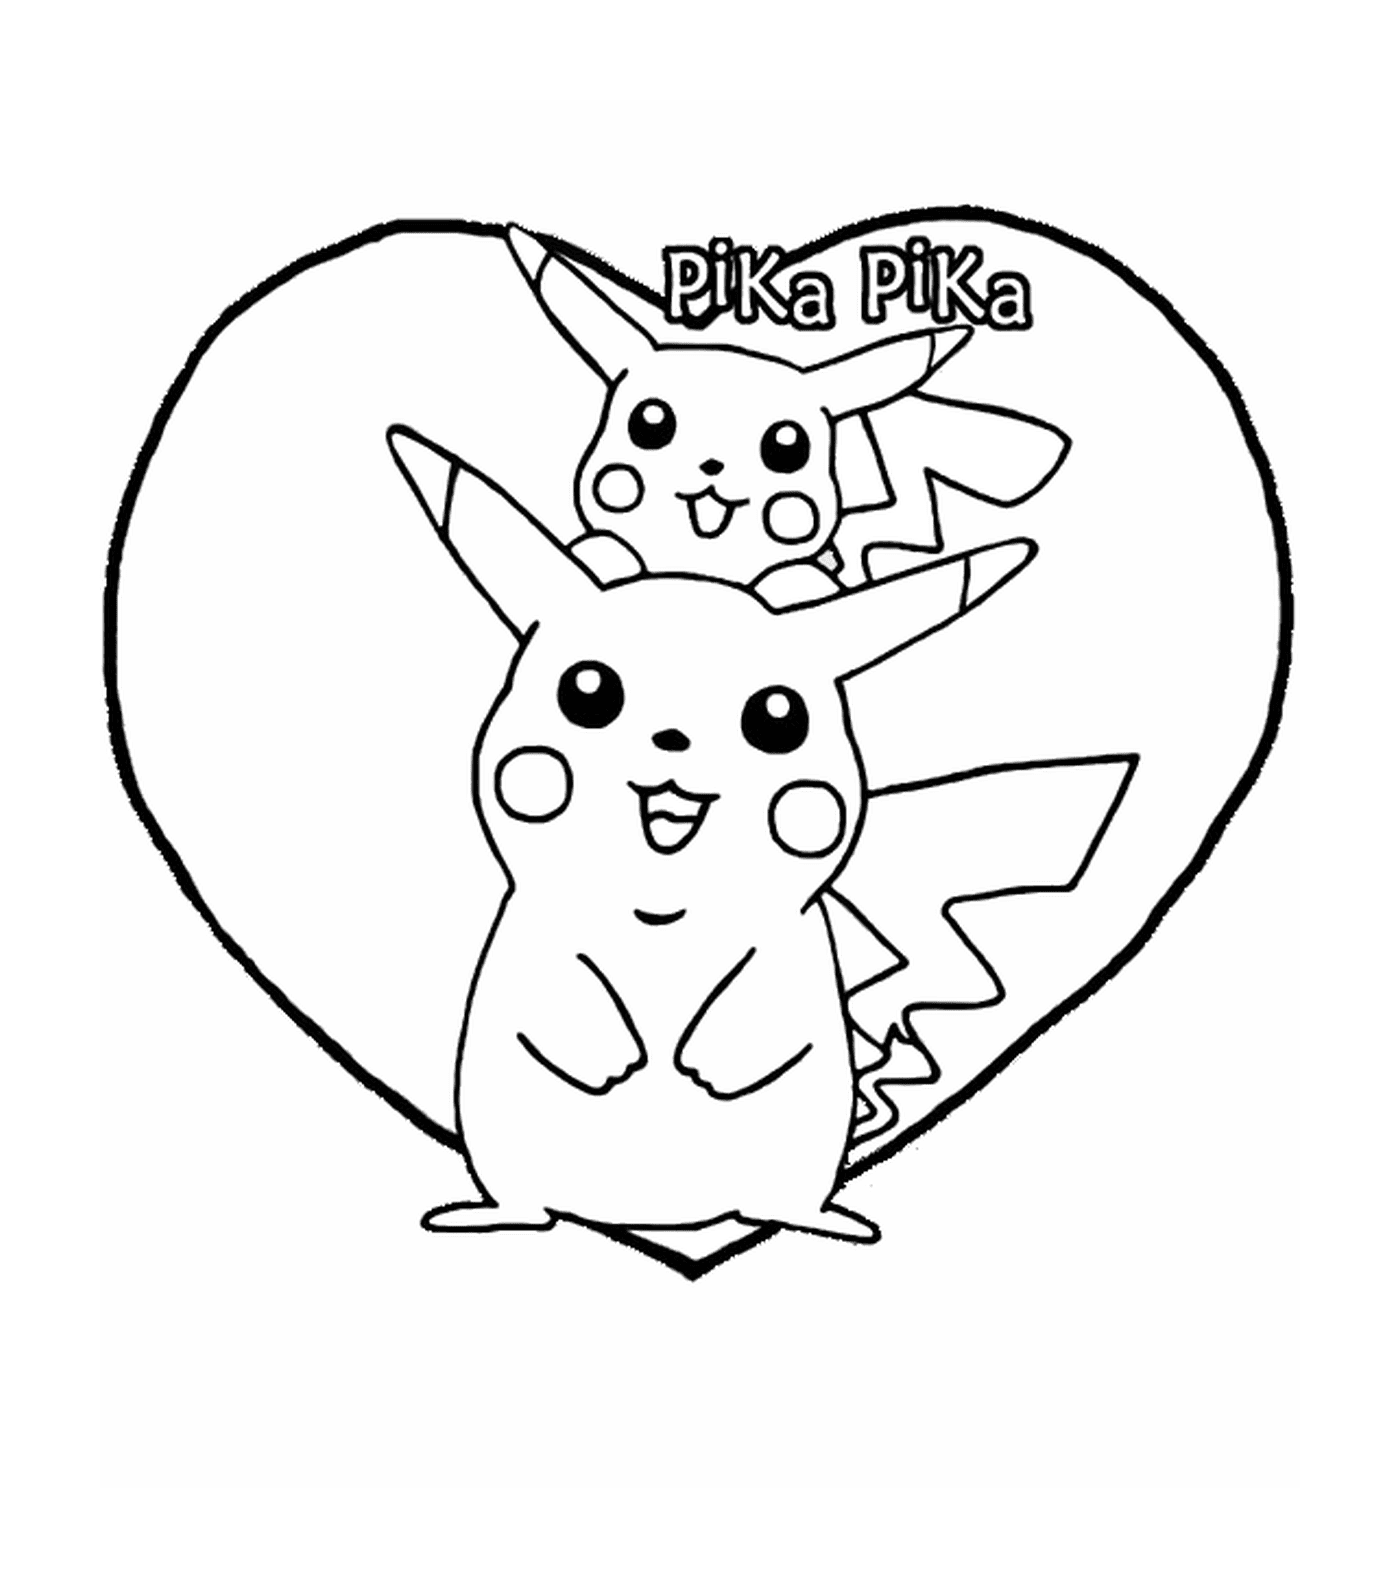  Pikachu, coração adorável 